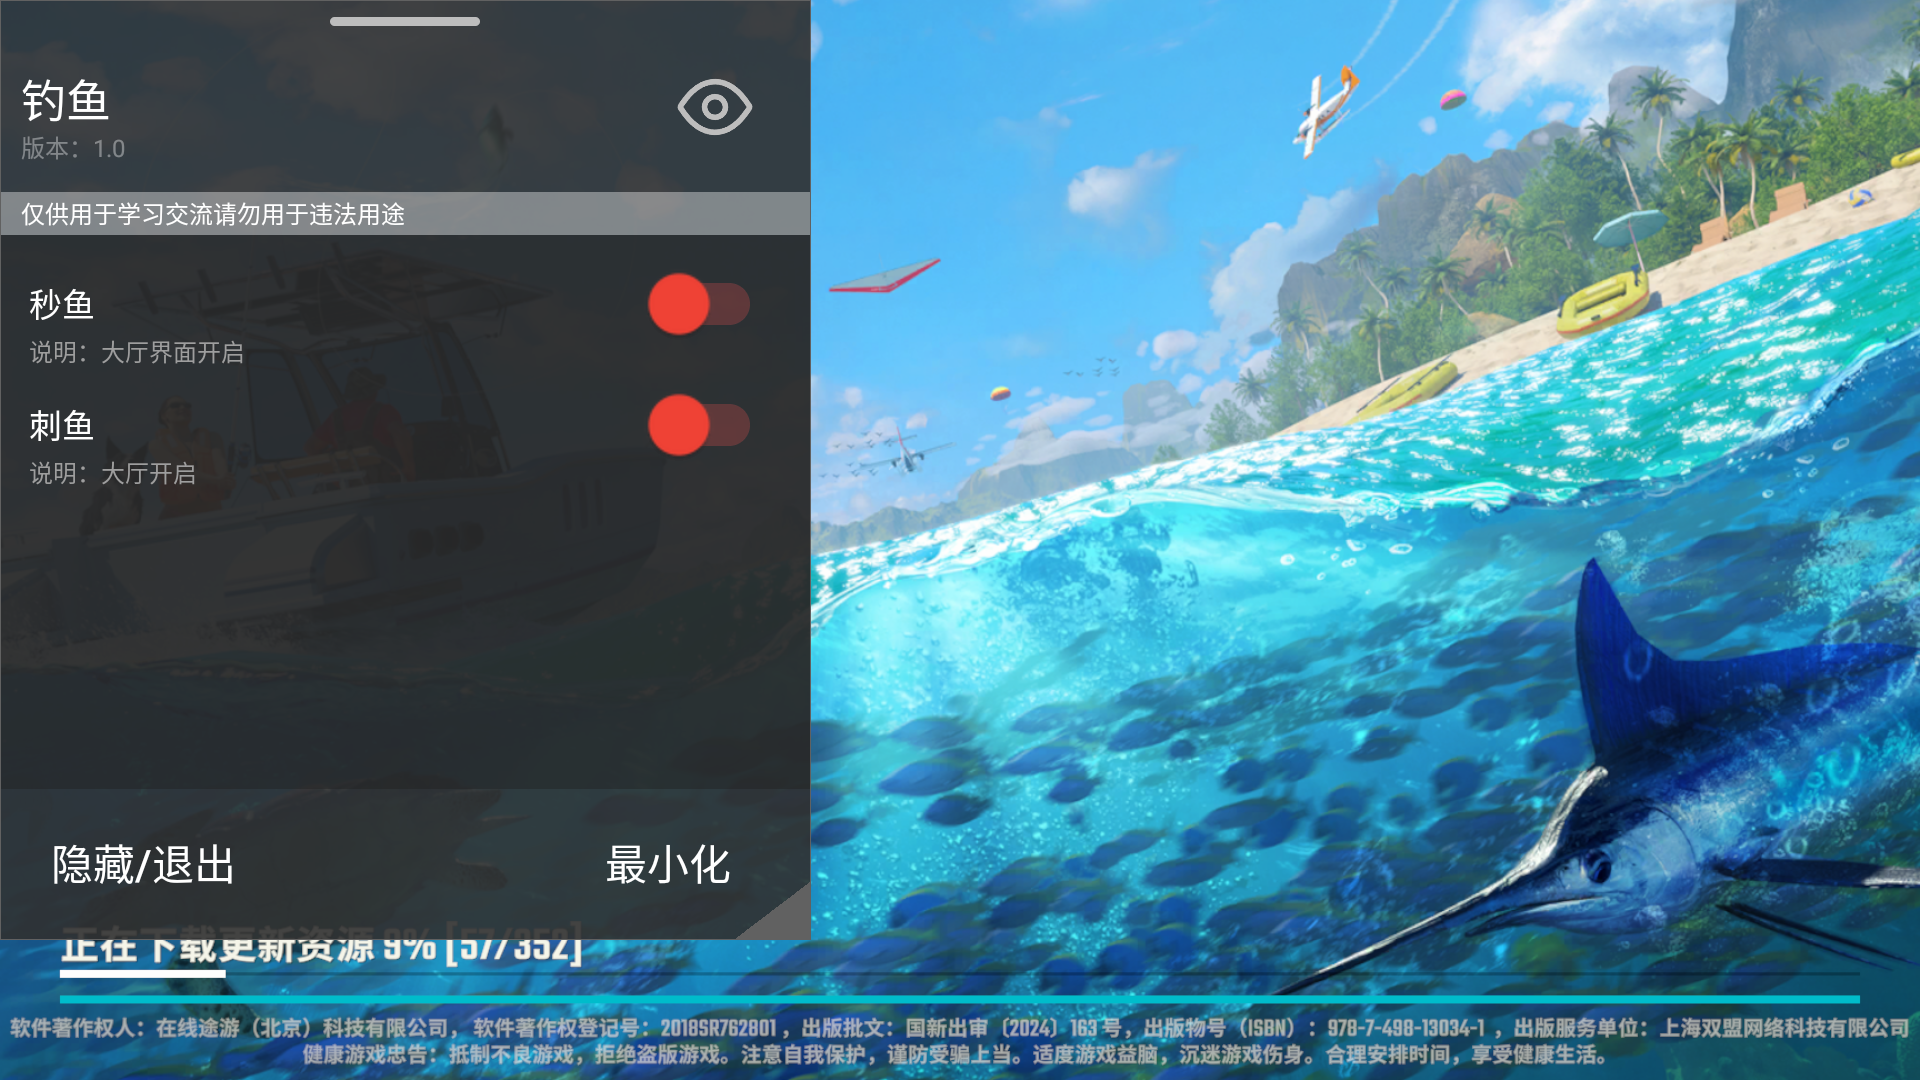 欢乐钓鱼大师 v1.0.0.48207秒鱼鱼刺直装版